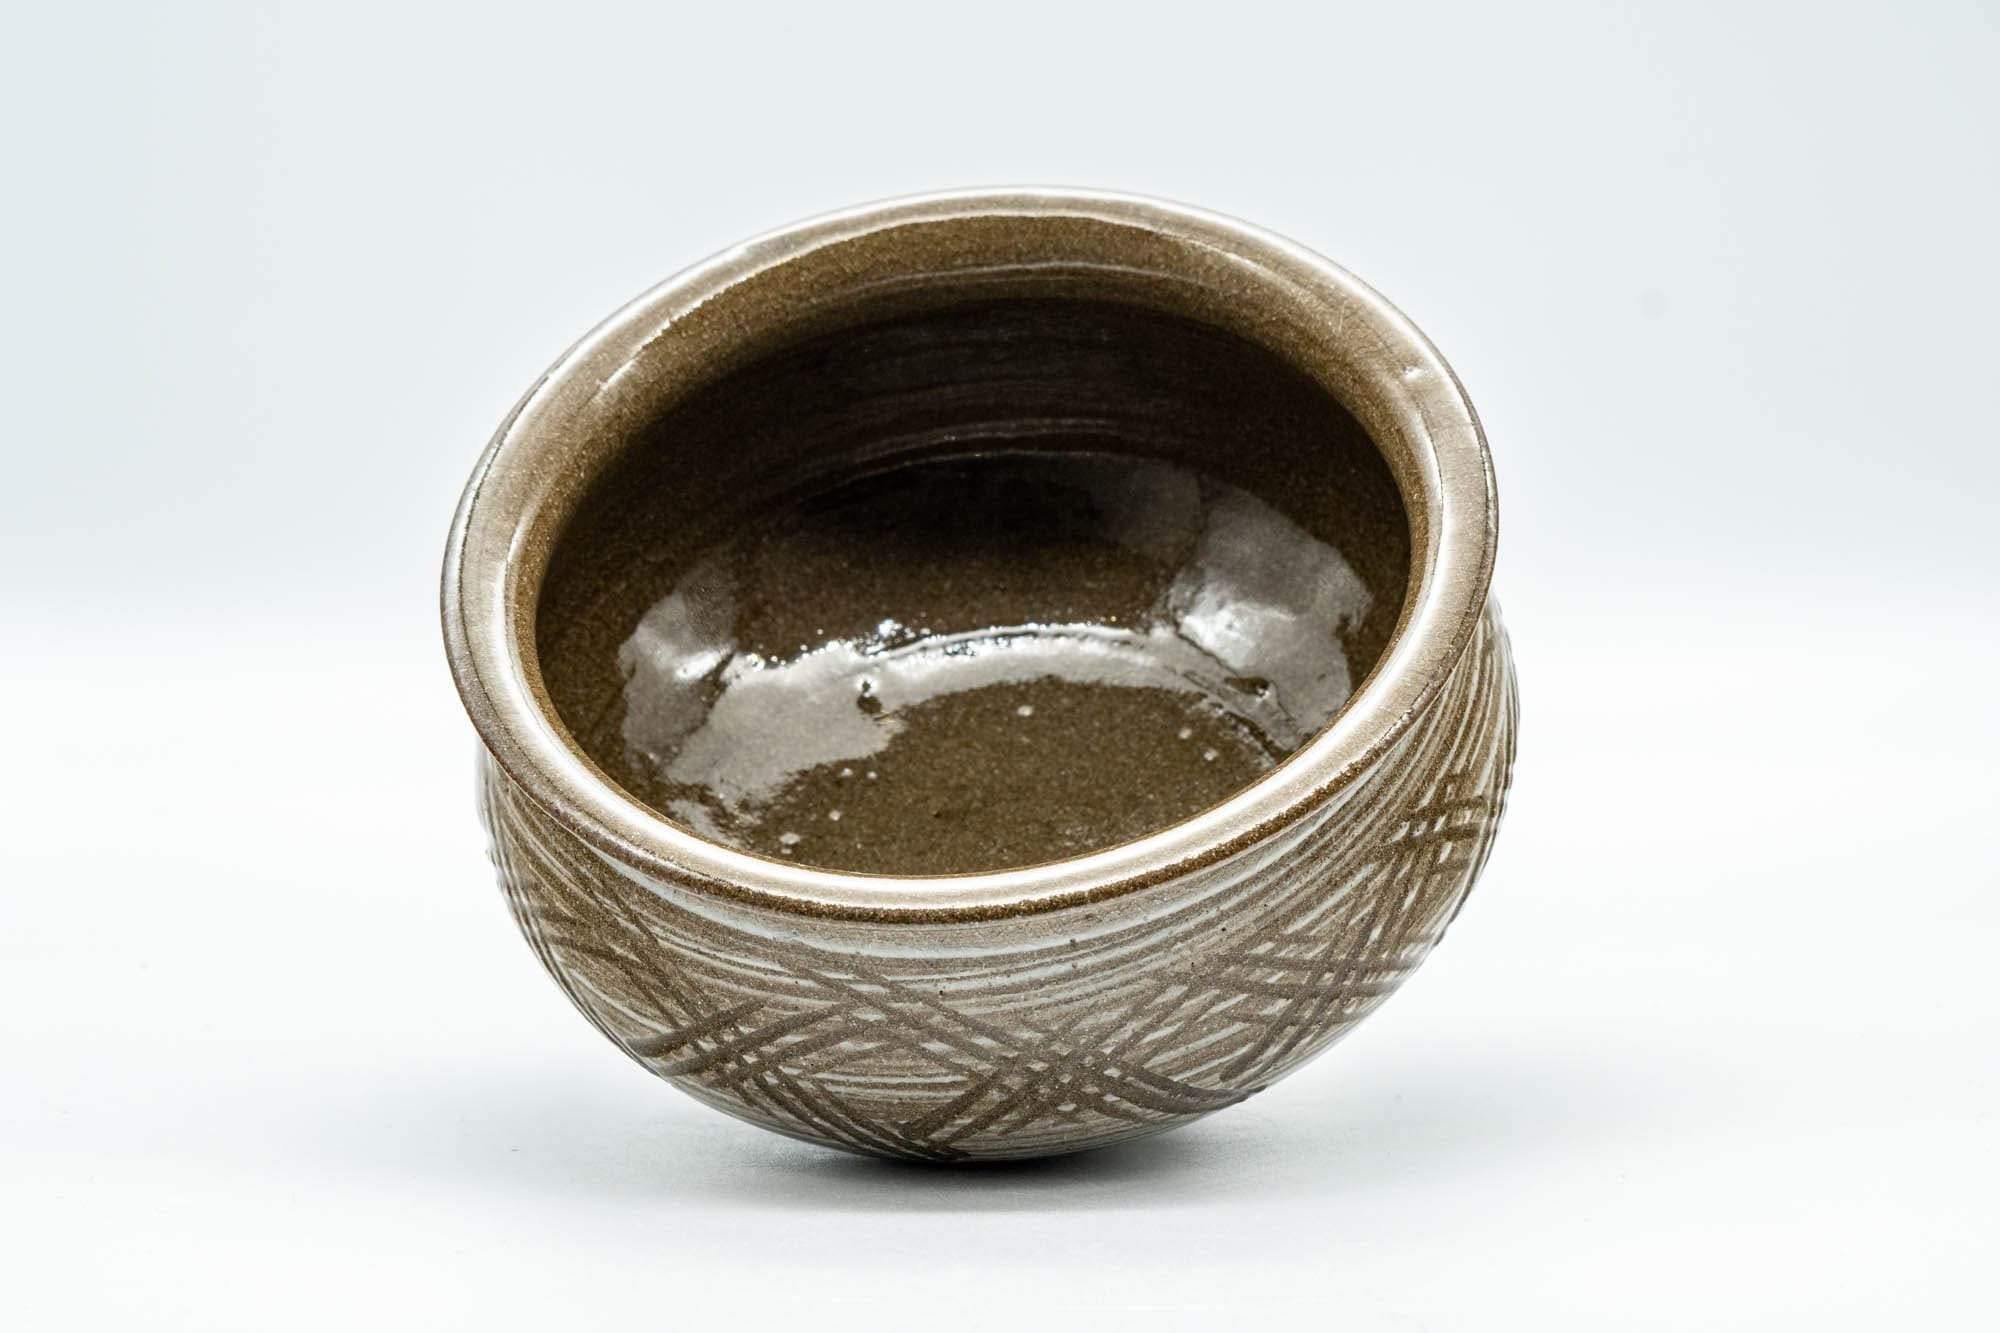 Japanese Kensui - Geometric Patterned Water Bowl - 400ml - Tezumi